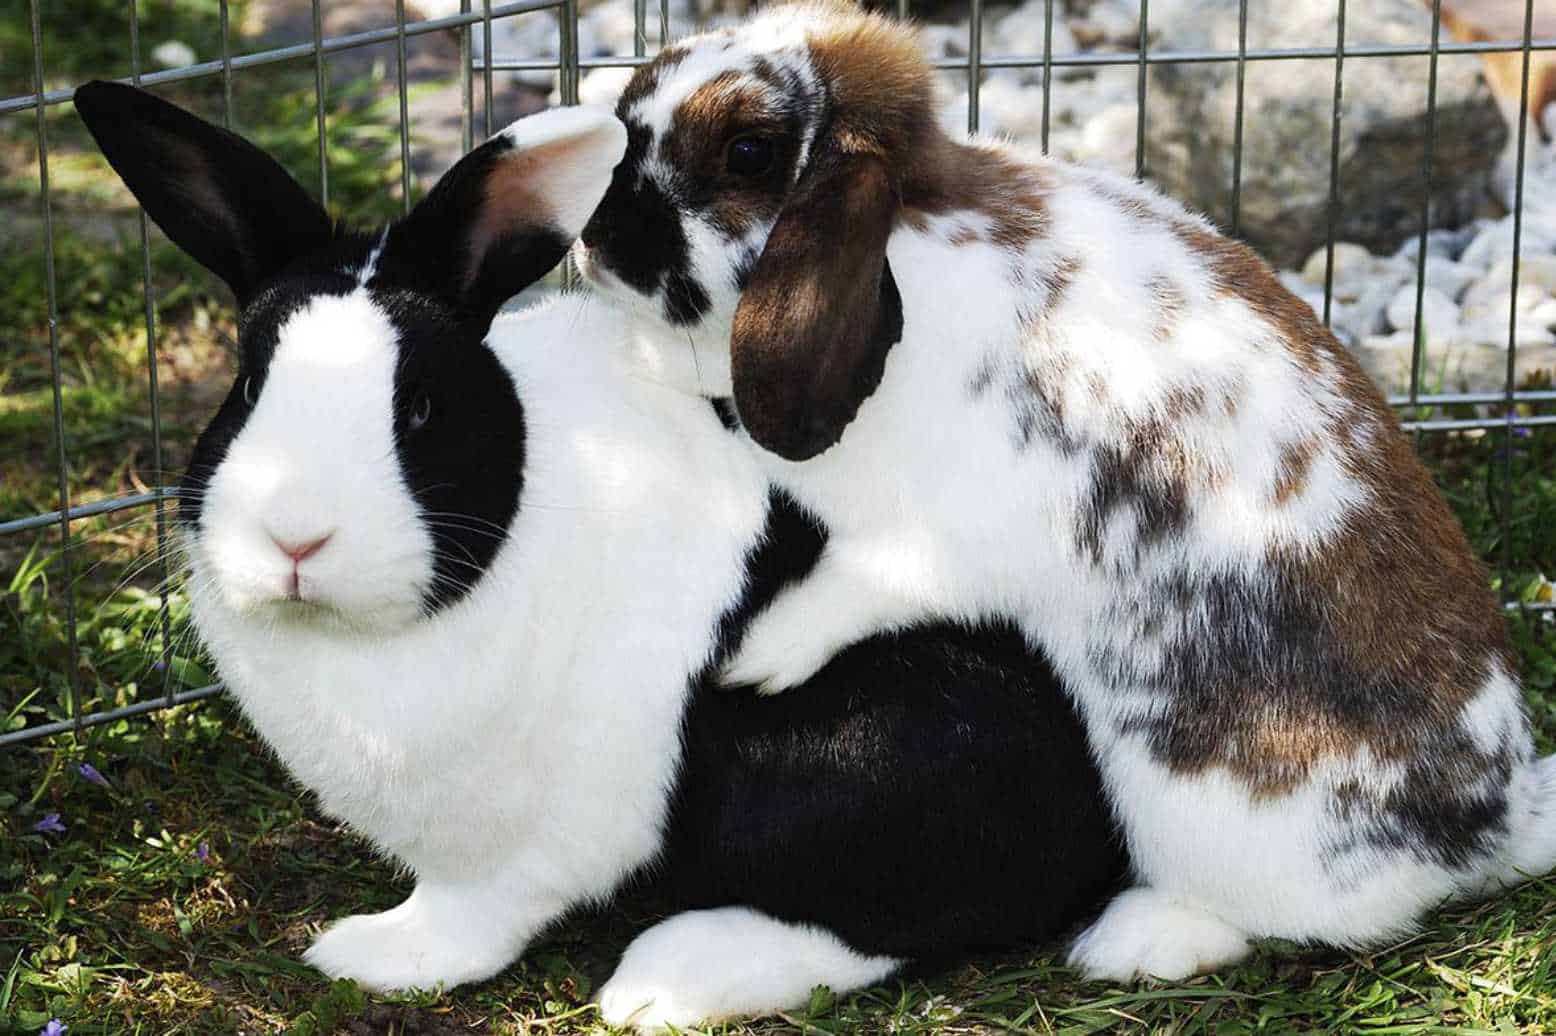 sexing a rabbit